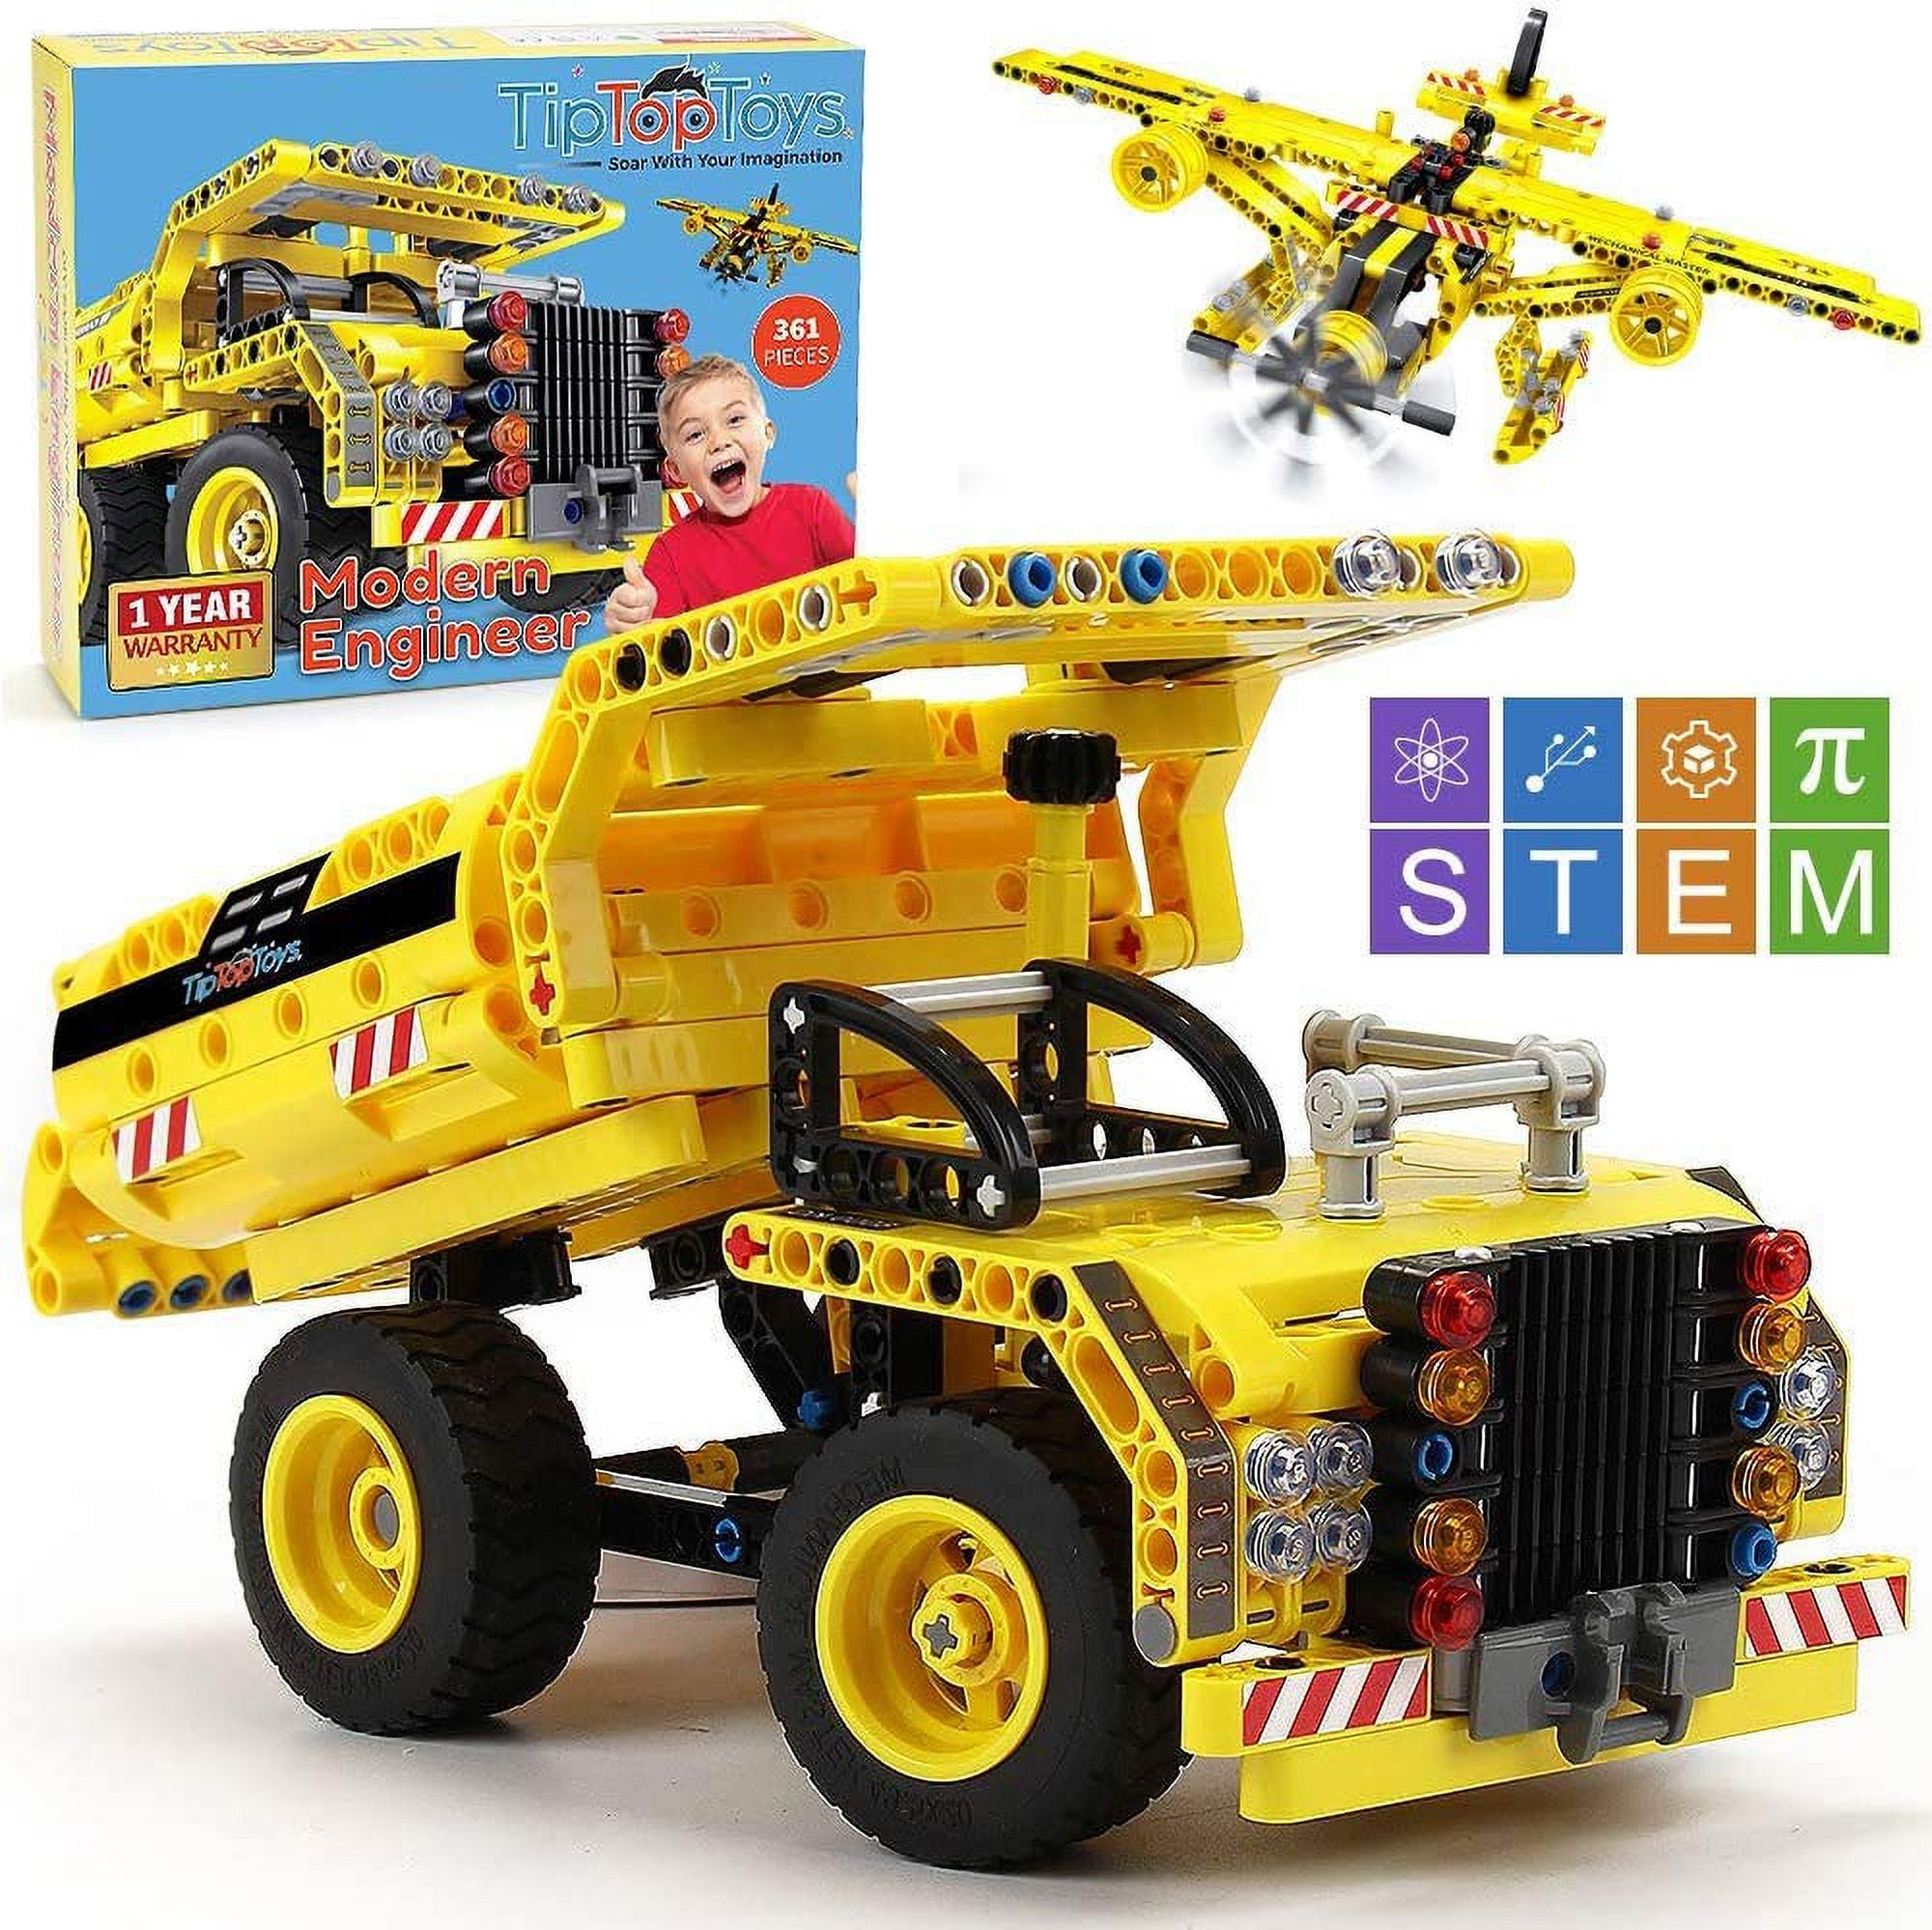 STEM Toy Building Sets for Boys 8-12 - 361 Pcs Construction